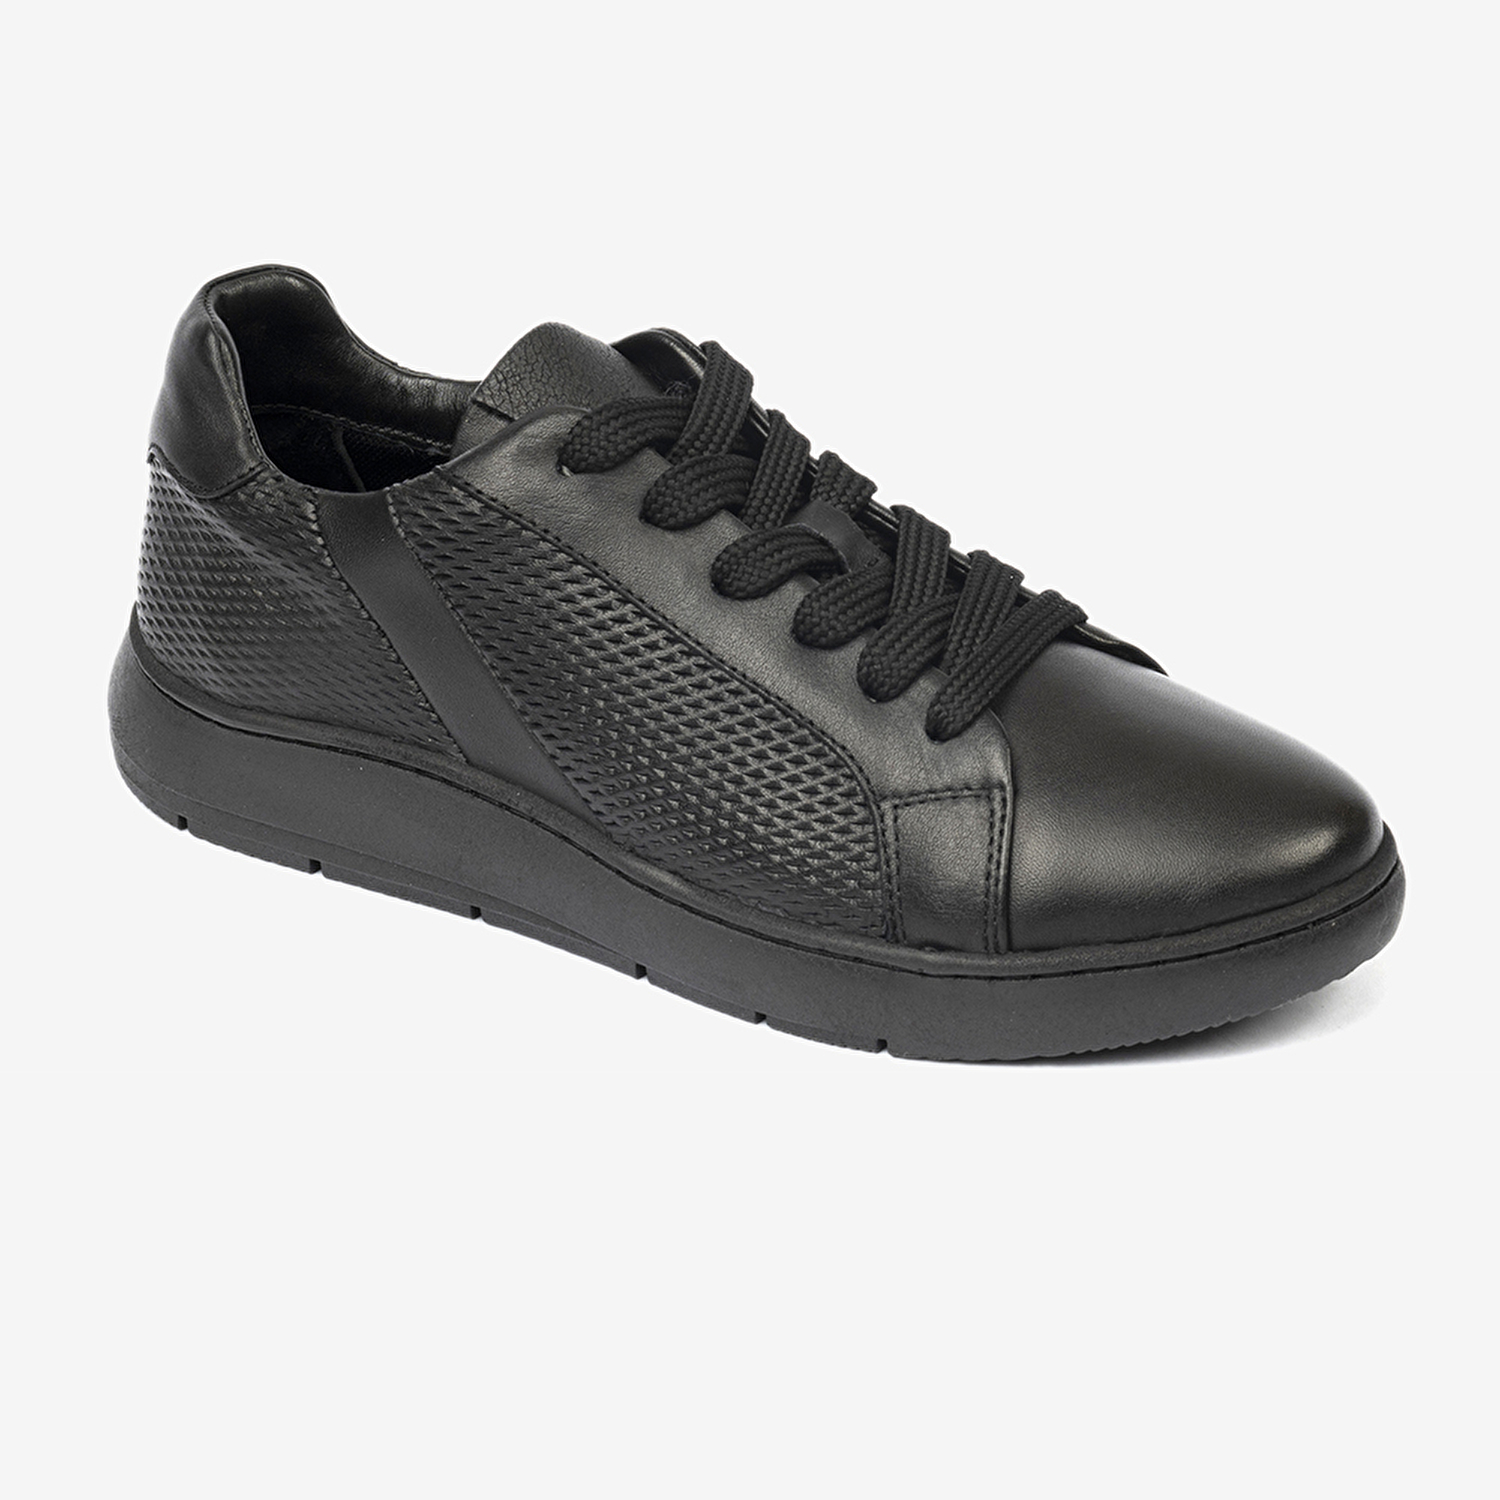 Kadın Siyah Hakiki Deri Sneaker Ayakkabı 4Y2SA33600-1